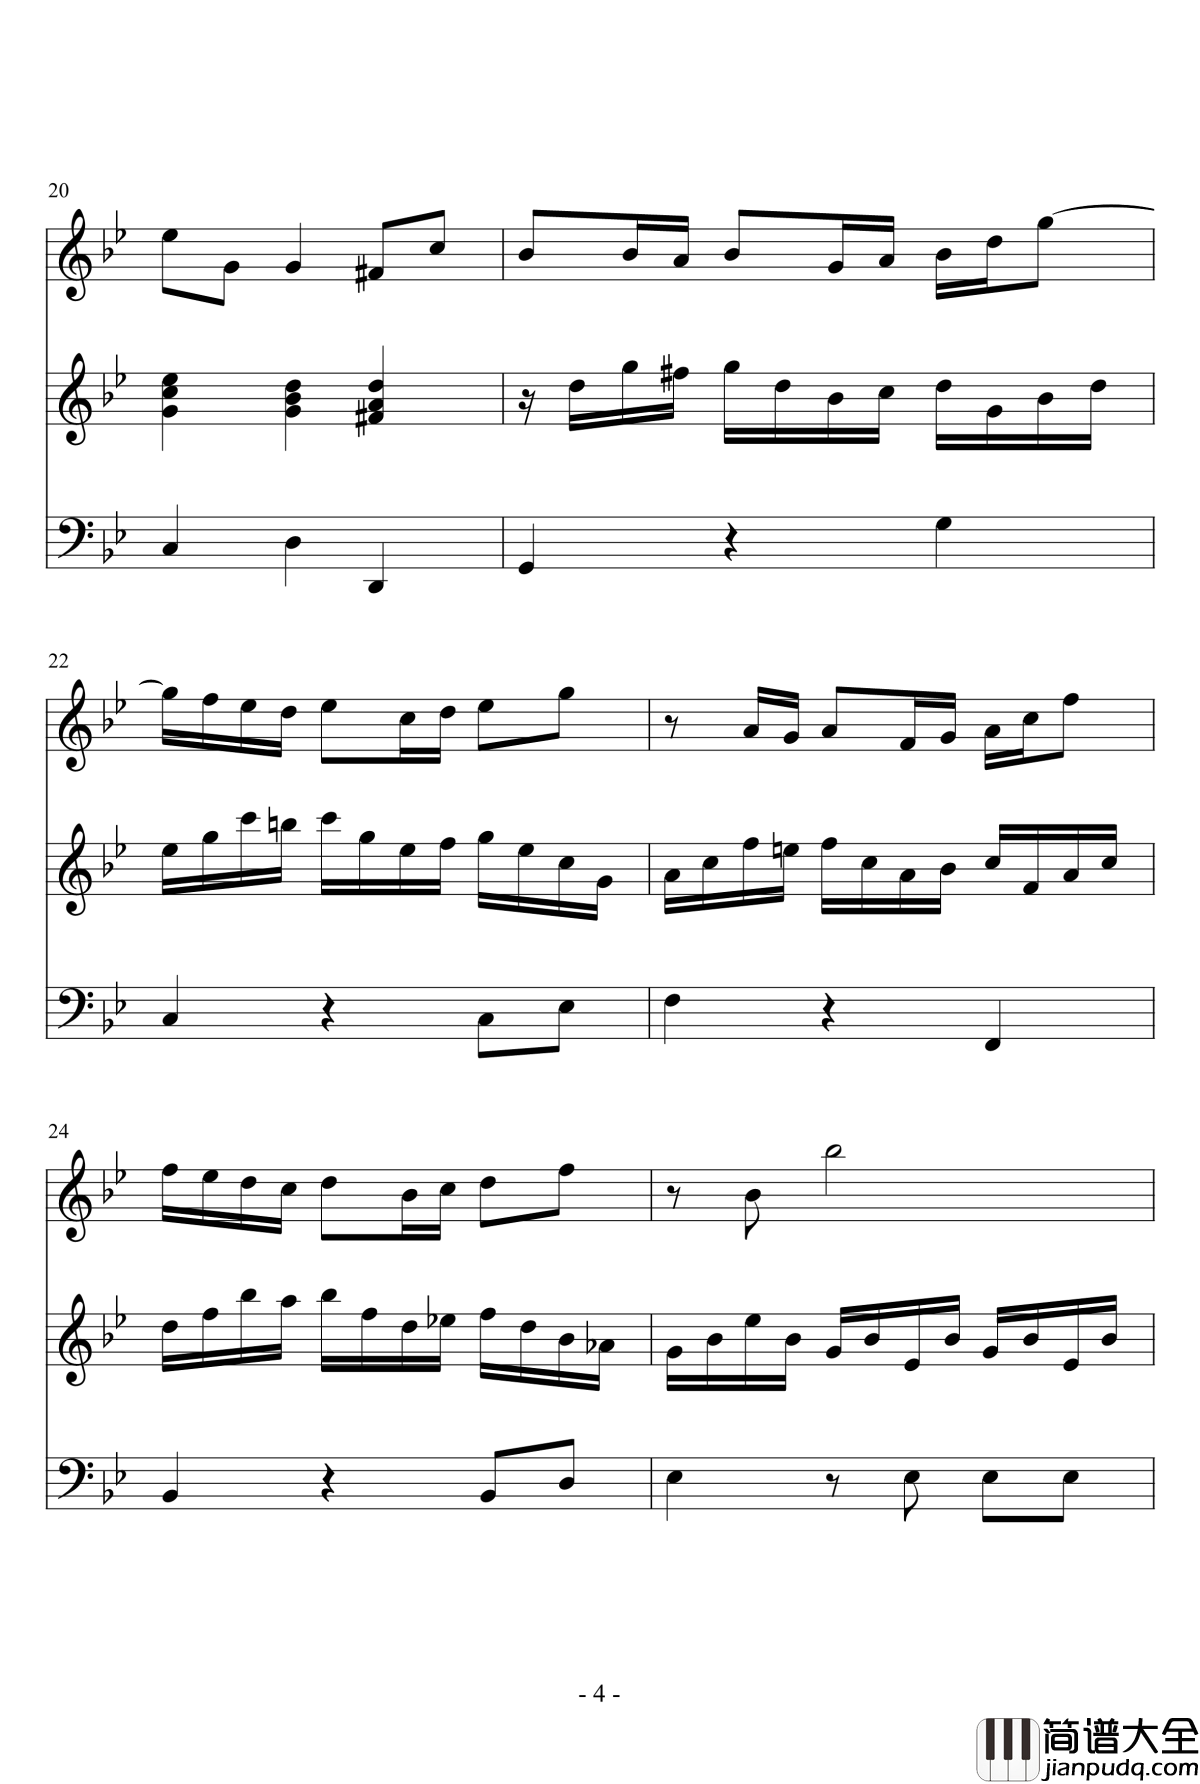 长笛与羽管键琴奏鸣曲第一乐章钢琴谱_巴赫_P.E.Bach